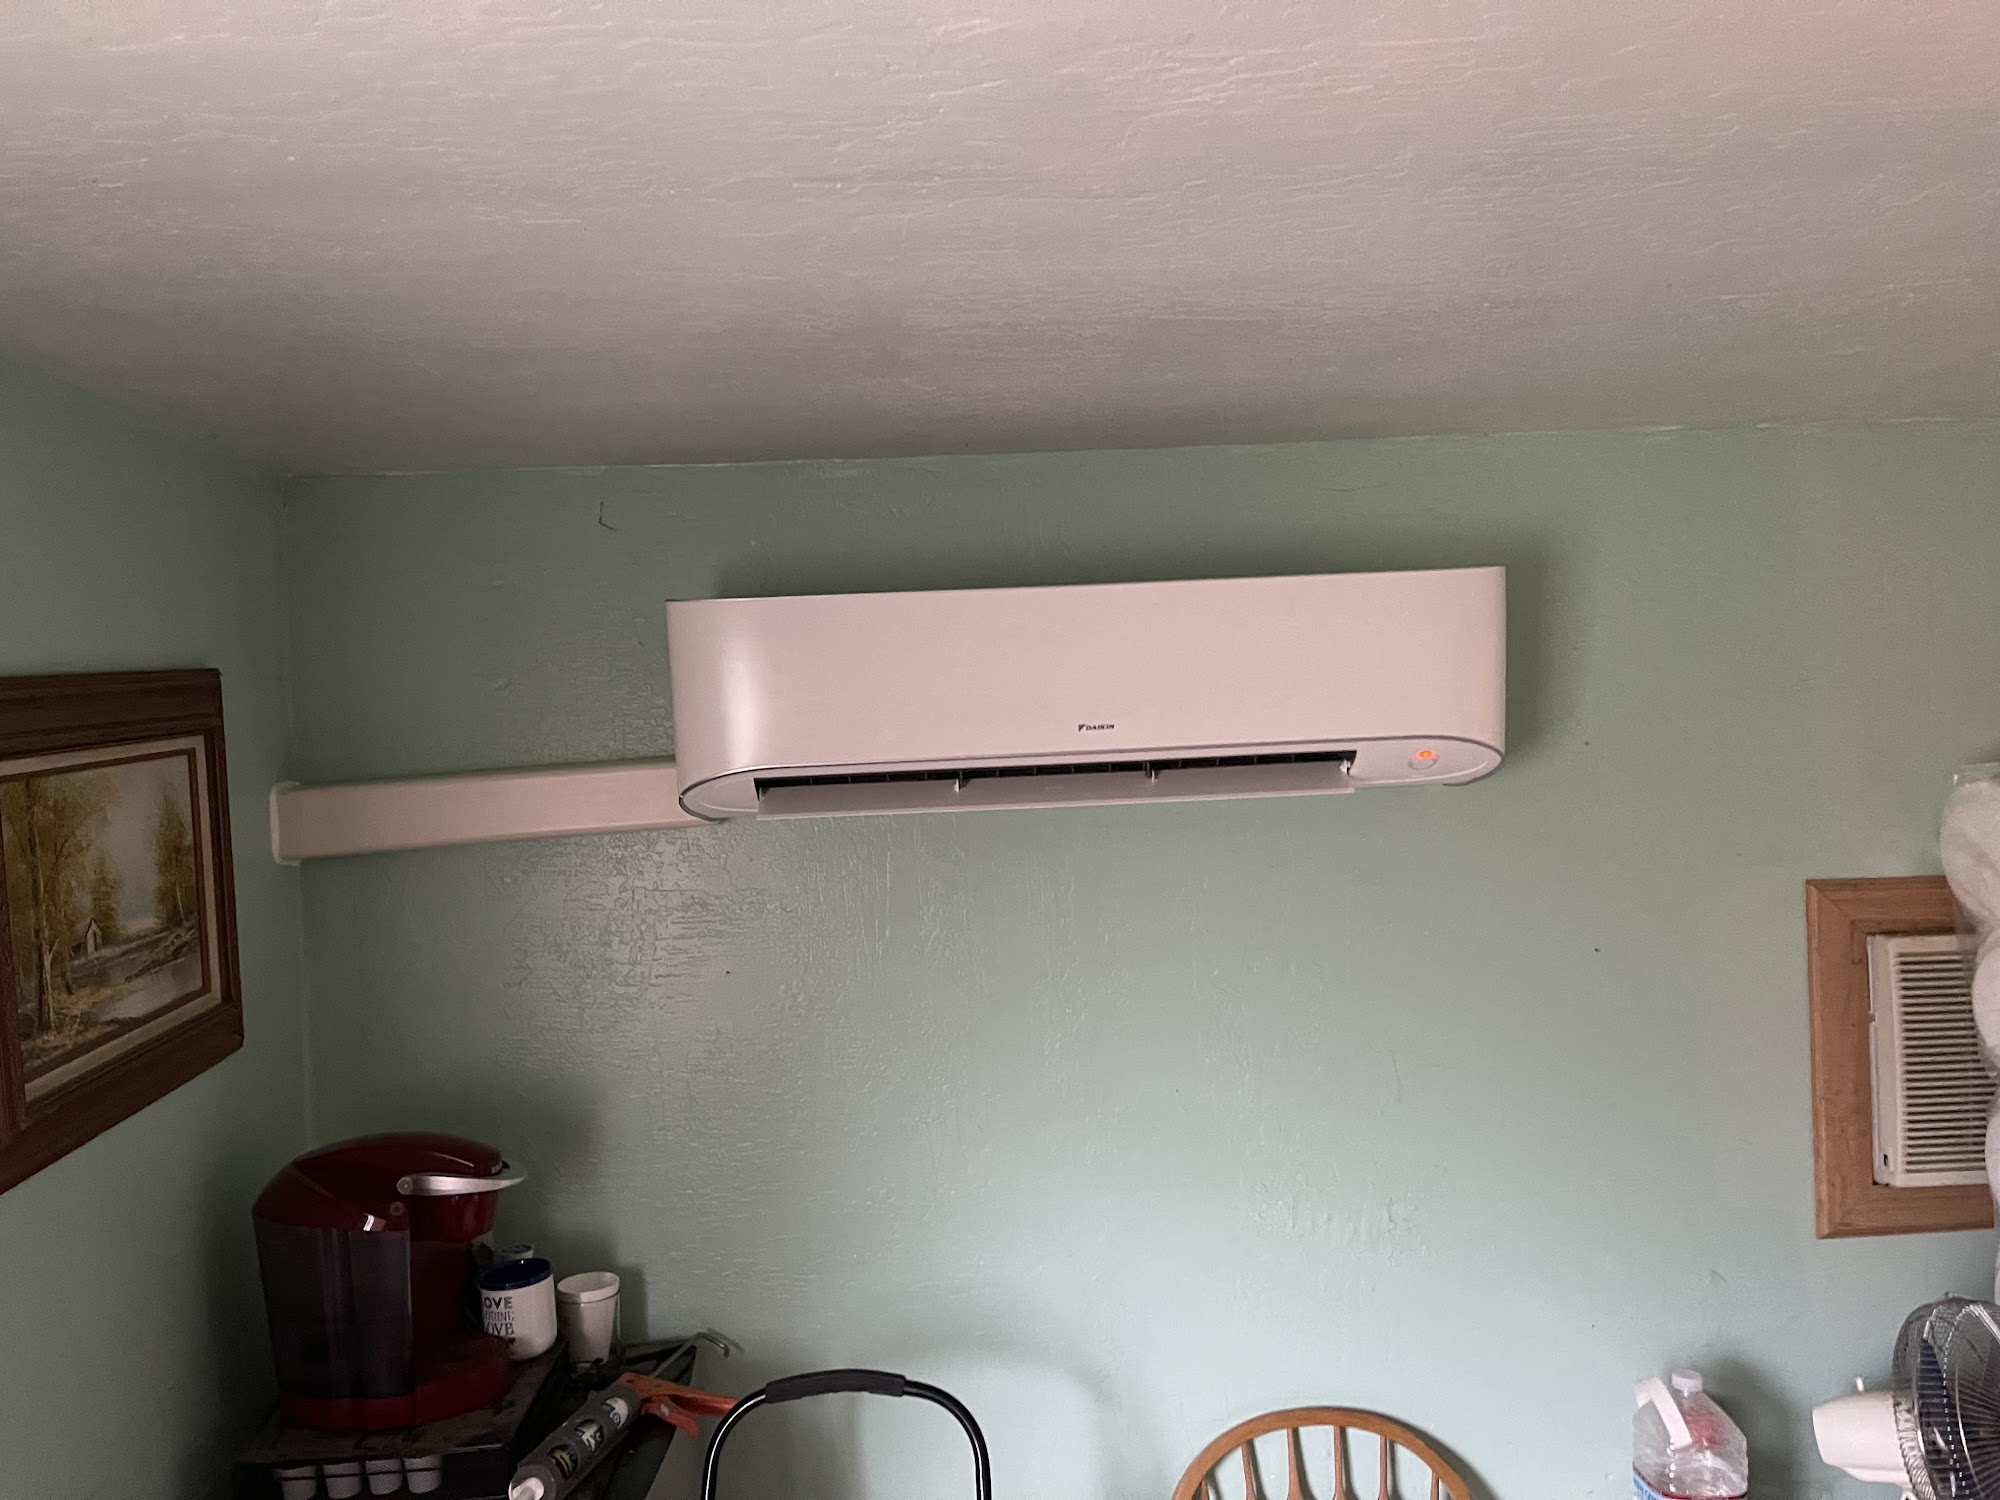 Econo Air HVAC